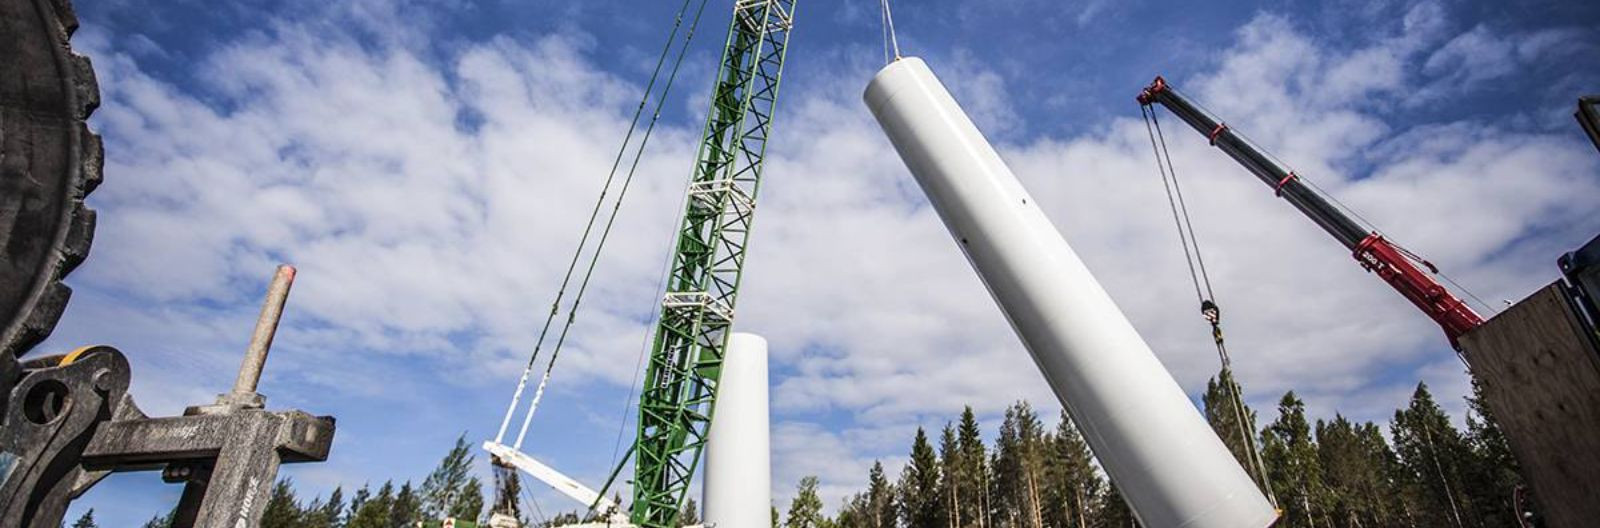 TUULEPARKIDE PROJEKTID       TM Voima Oy tegeleb paljude Põhja-Pohjanmaa tuuleparkide arendamisega.  Nende projektide jaoks oleme loonud kohalikud projektiettev